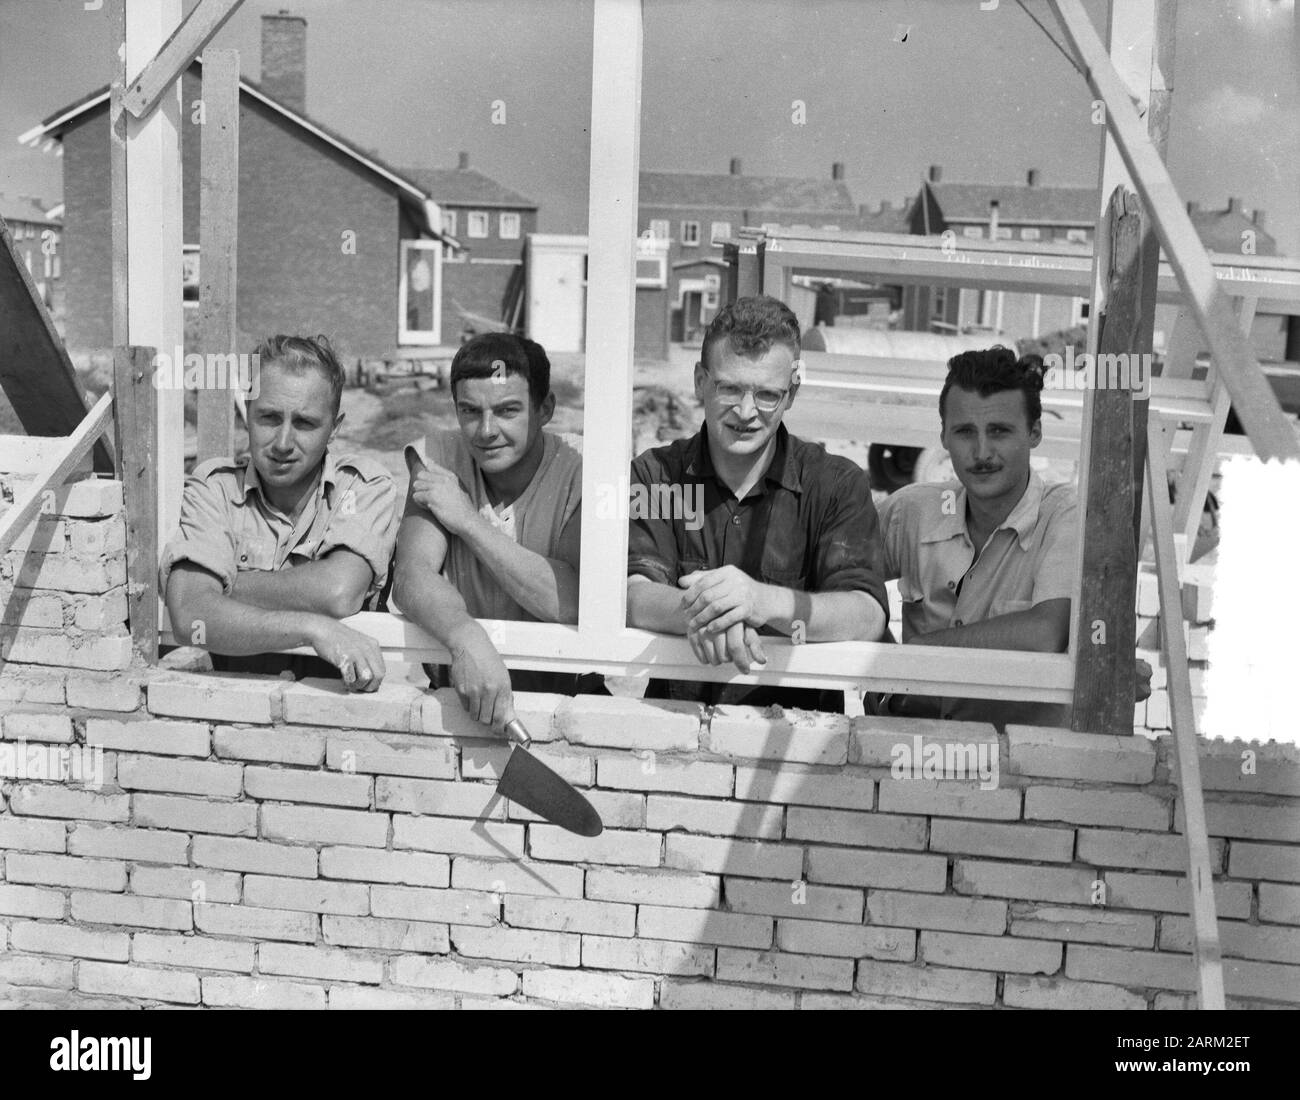 Volunteers including foreign youngsters help construction in Zeeland, on Nieuwerkerk Schouwen Duiveland Date: 30 August 1955 Location: Nieuwerkerk, Schouwen-Duiveland, Zeeland Keywords: VOLUNGERS Stock Photo